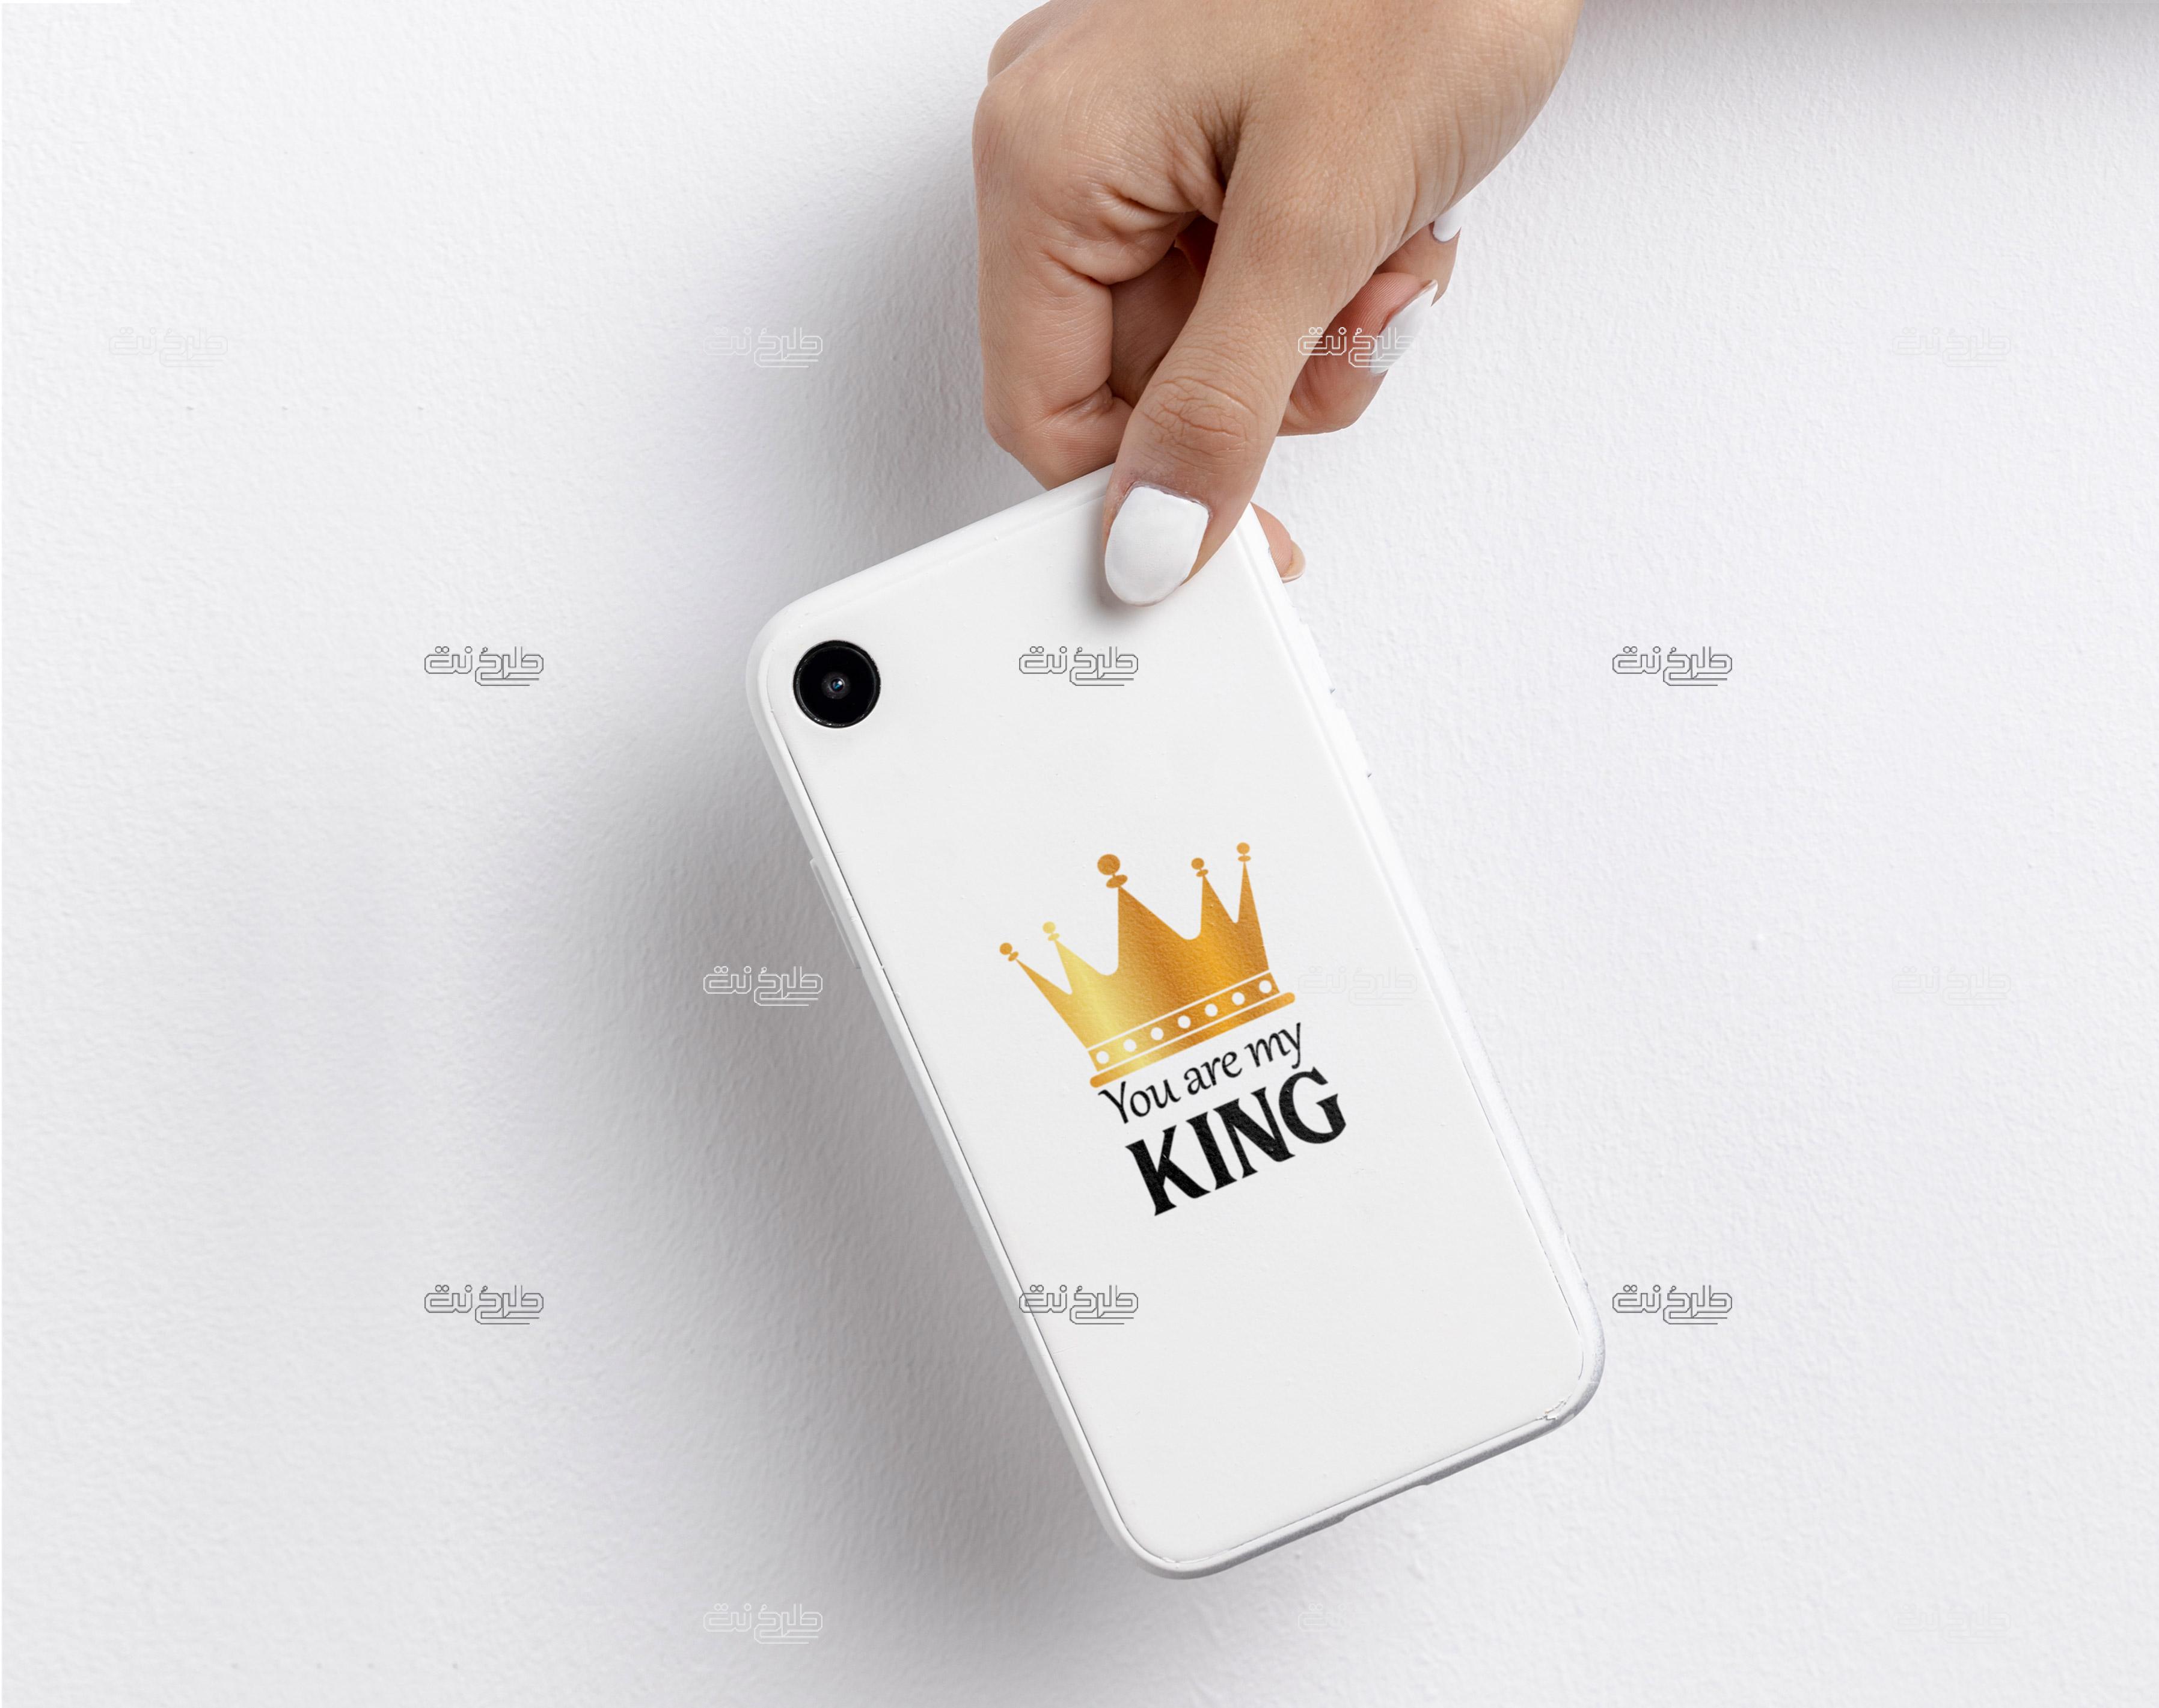 دانلود طرح لایه باز کاور موبایل تاج با متن "You are my KING"